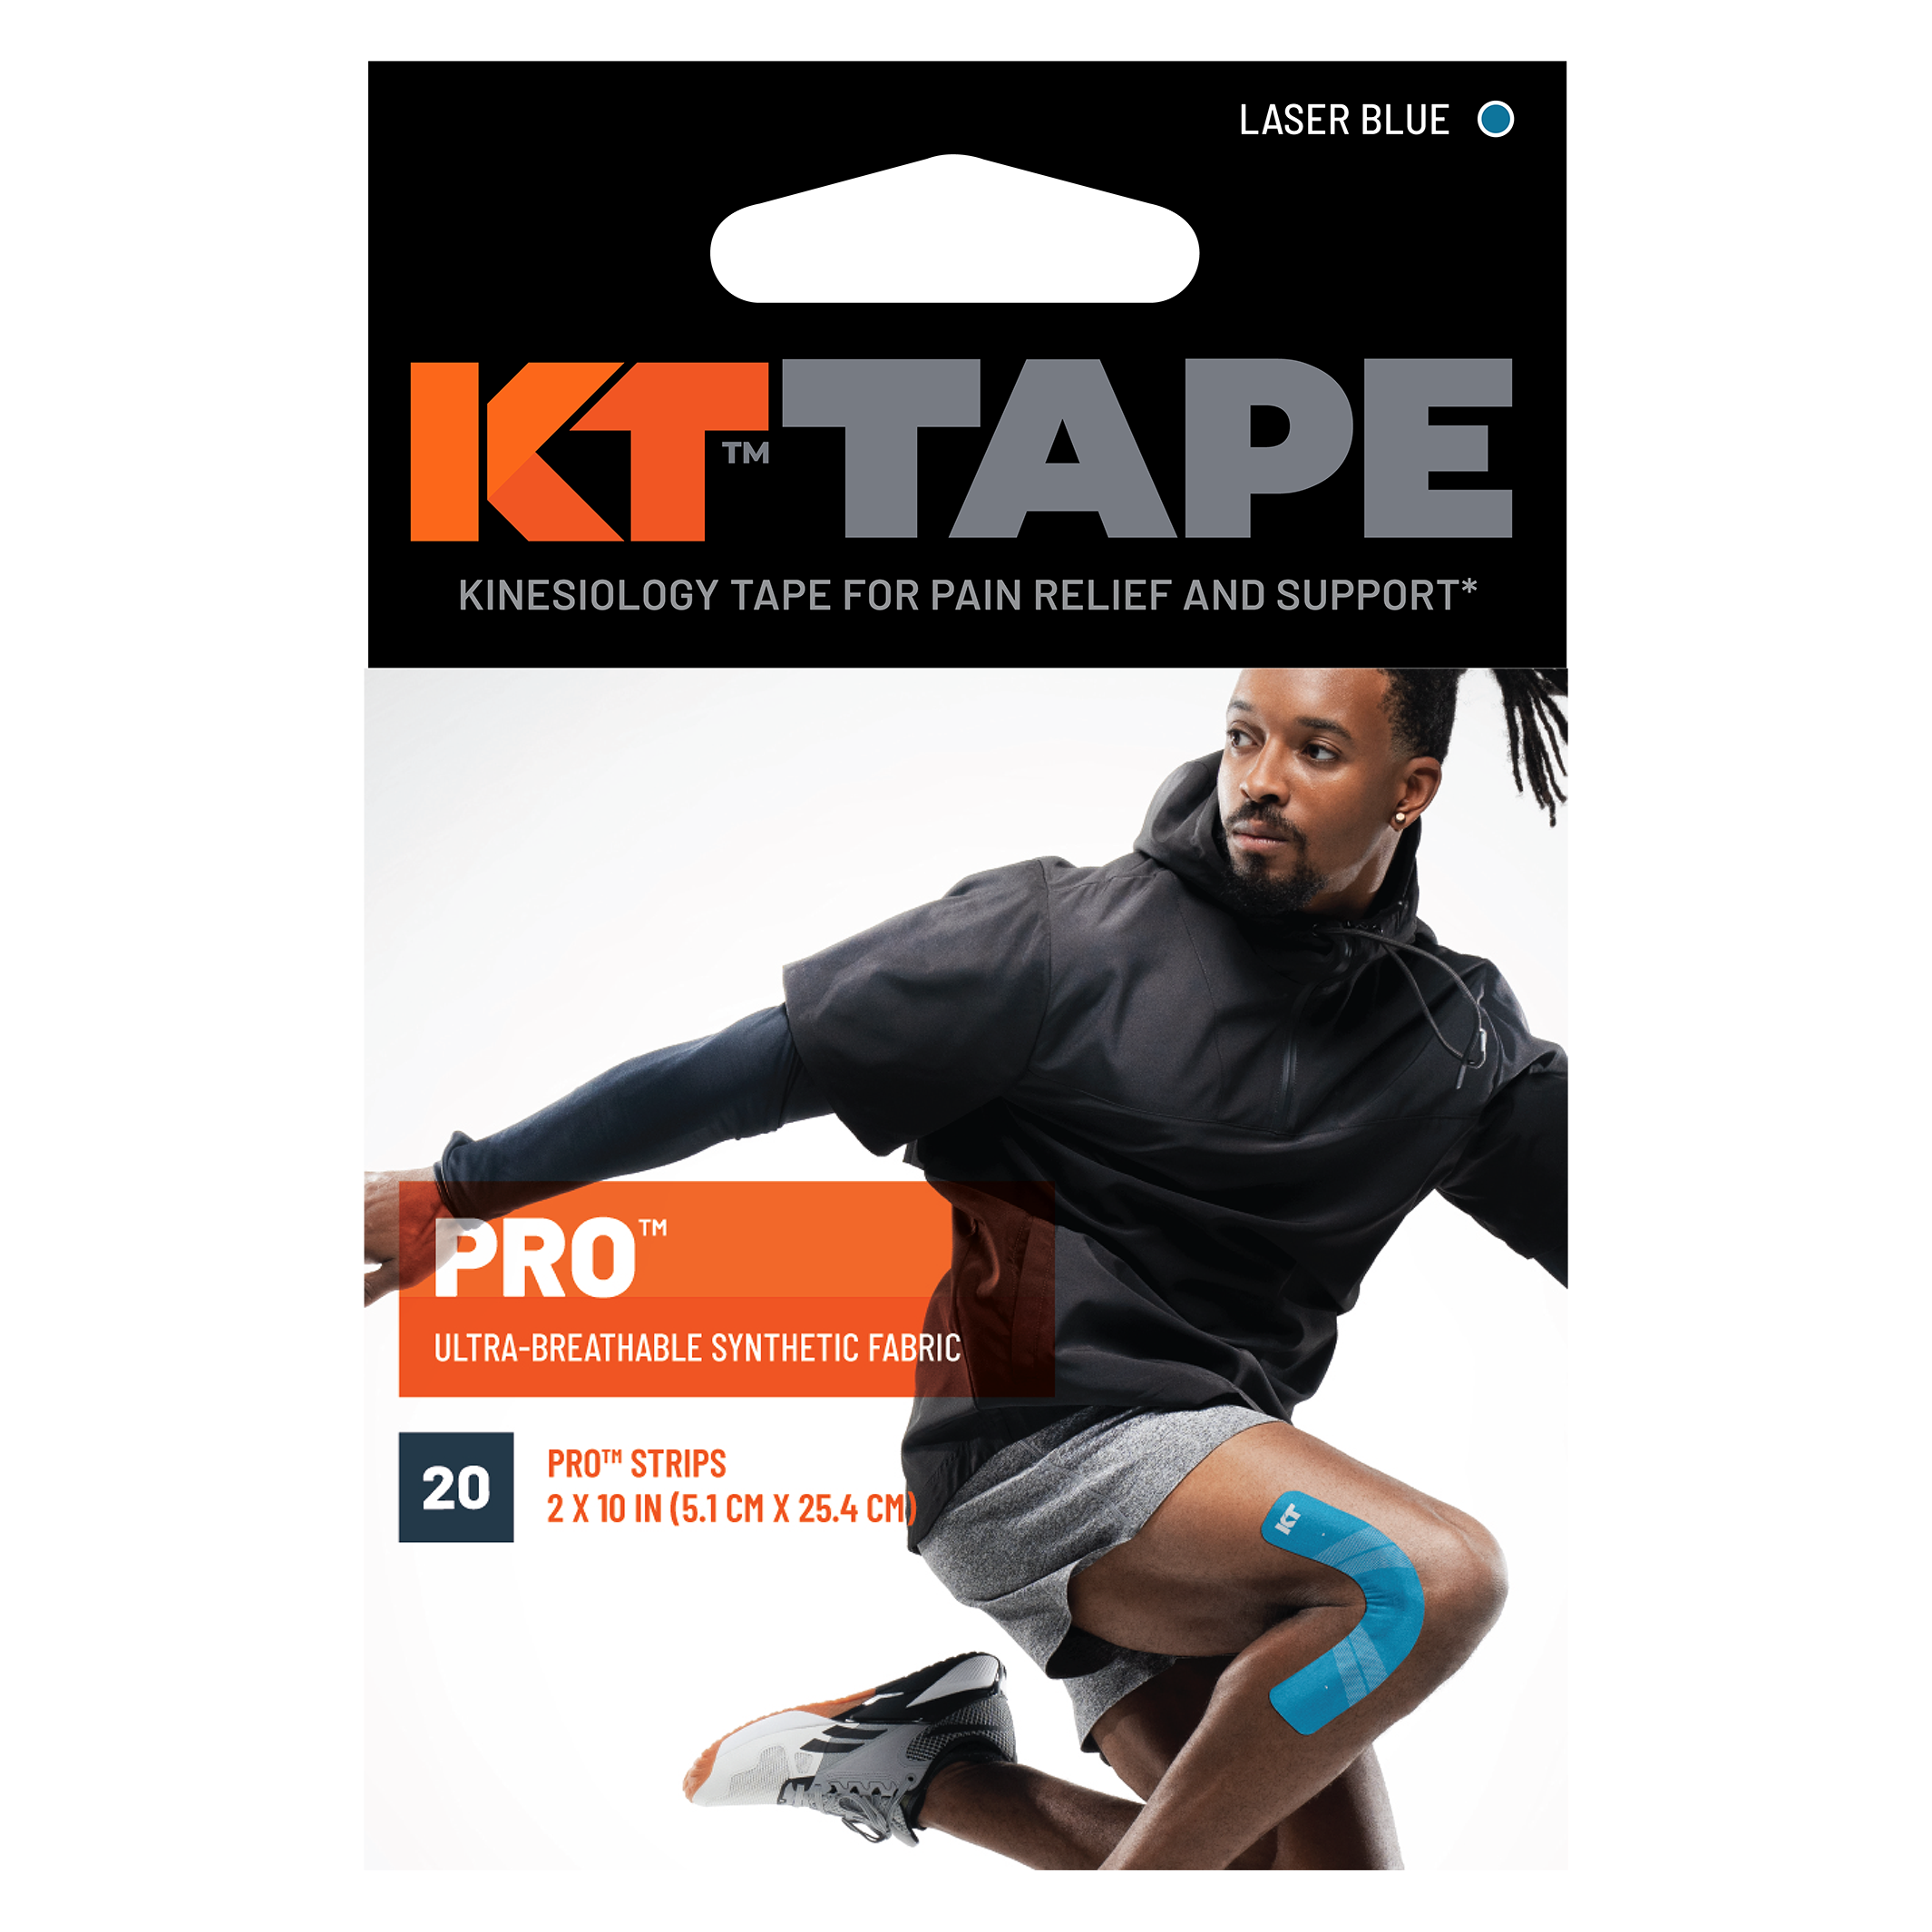 KT Tape Pro packaging#color_laser-blue